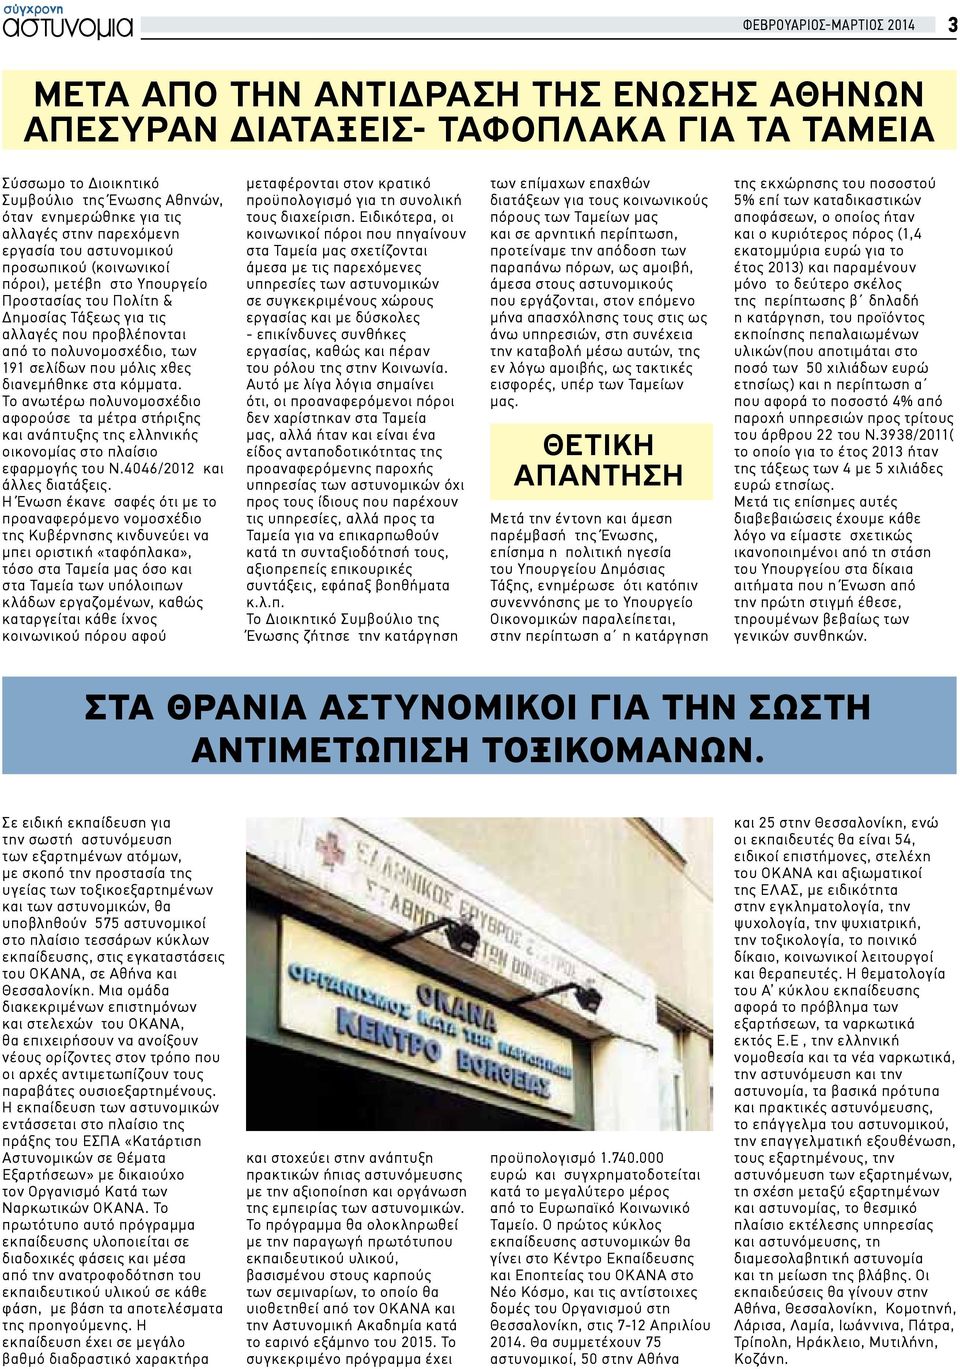 σελίδων που μόλις χθες διανεμήθηκε στα κόμματα. Το ανωτέρω πολυνομοσχέδιο αφορούσε τα μέτρα στήριξης και ανάπτυξης της ελληνικής οικονομίας στο πλαίσιο εφαρμογής του Ν.4046/2012 και άλλες διατάξεις.